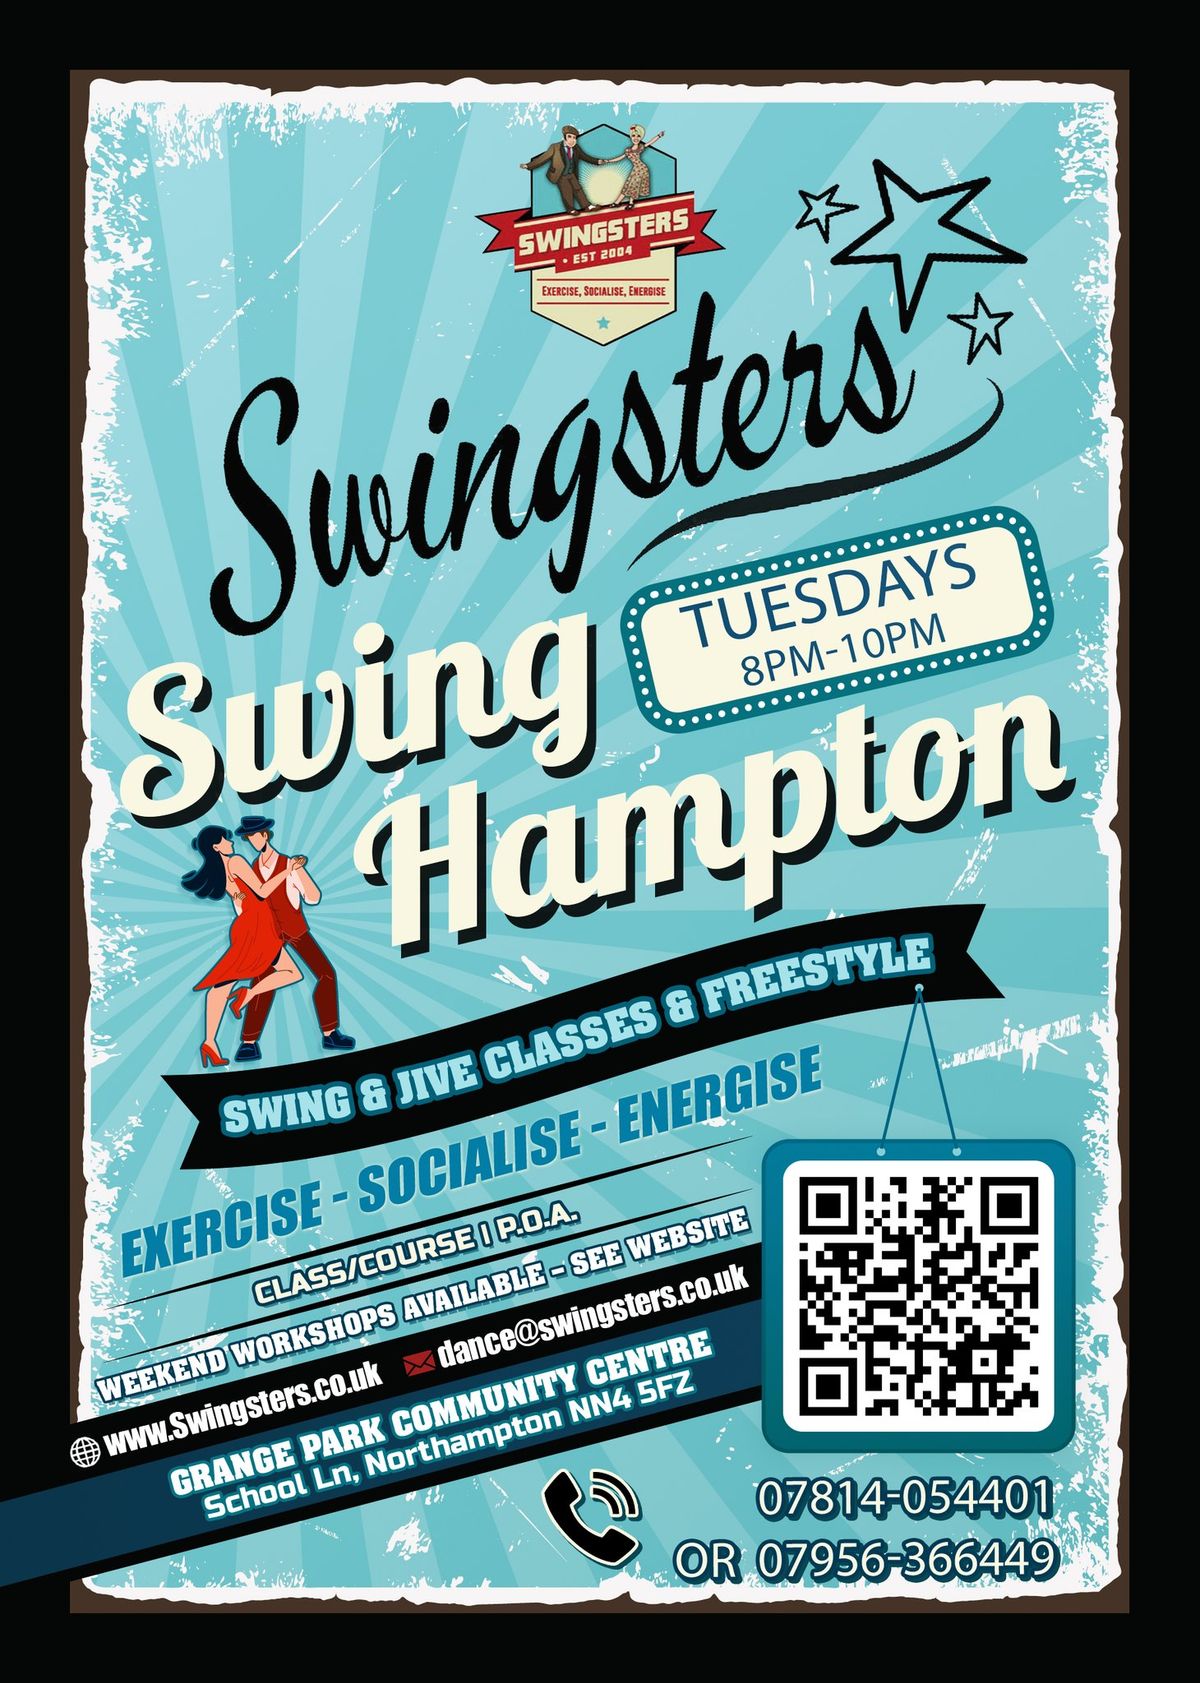 Swingsters Swing Hampton